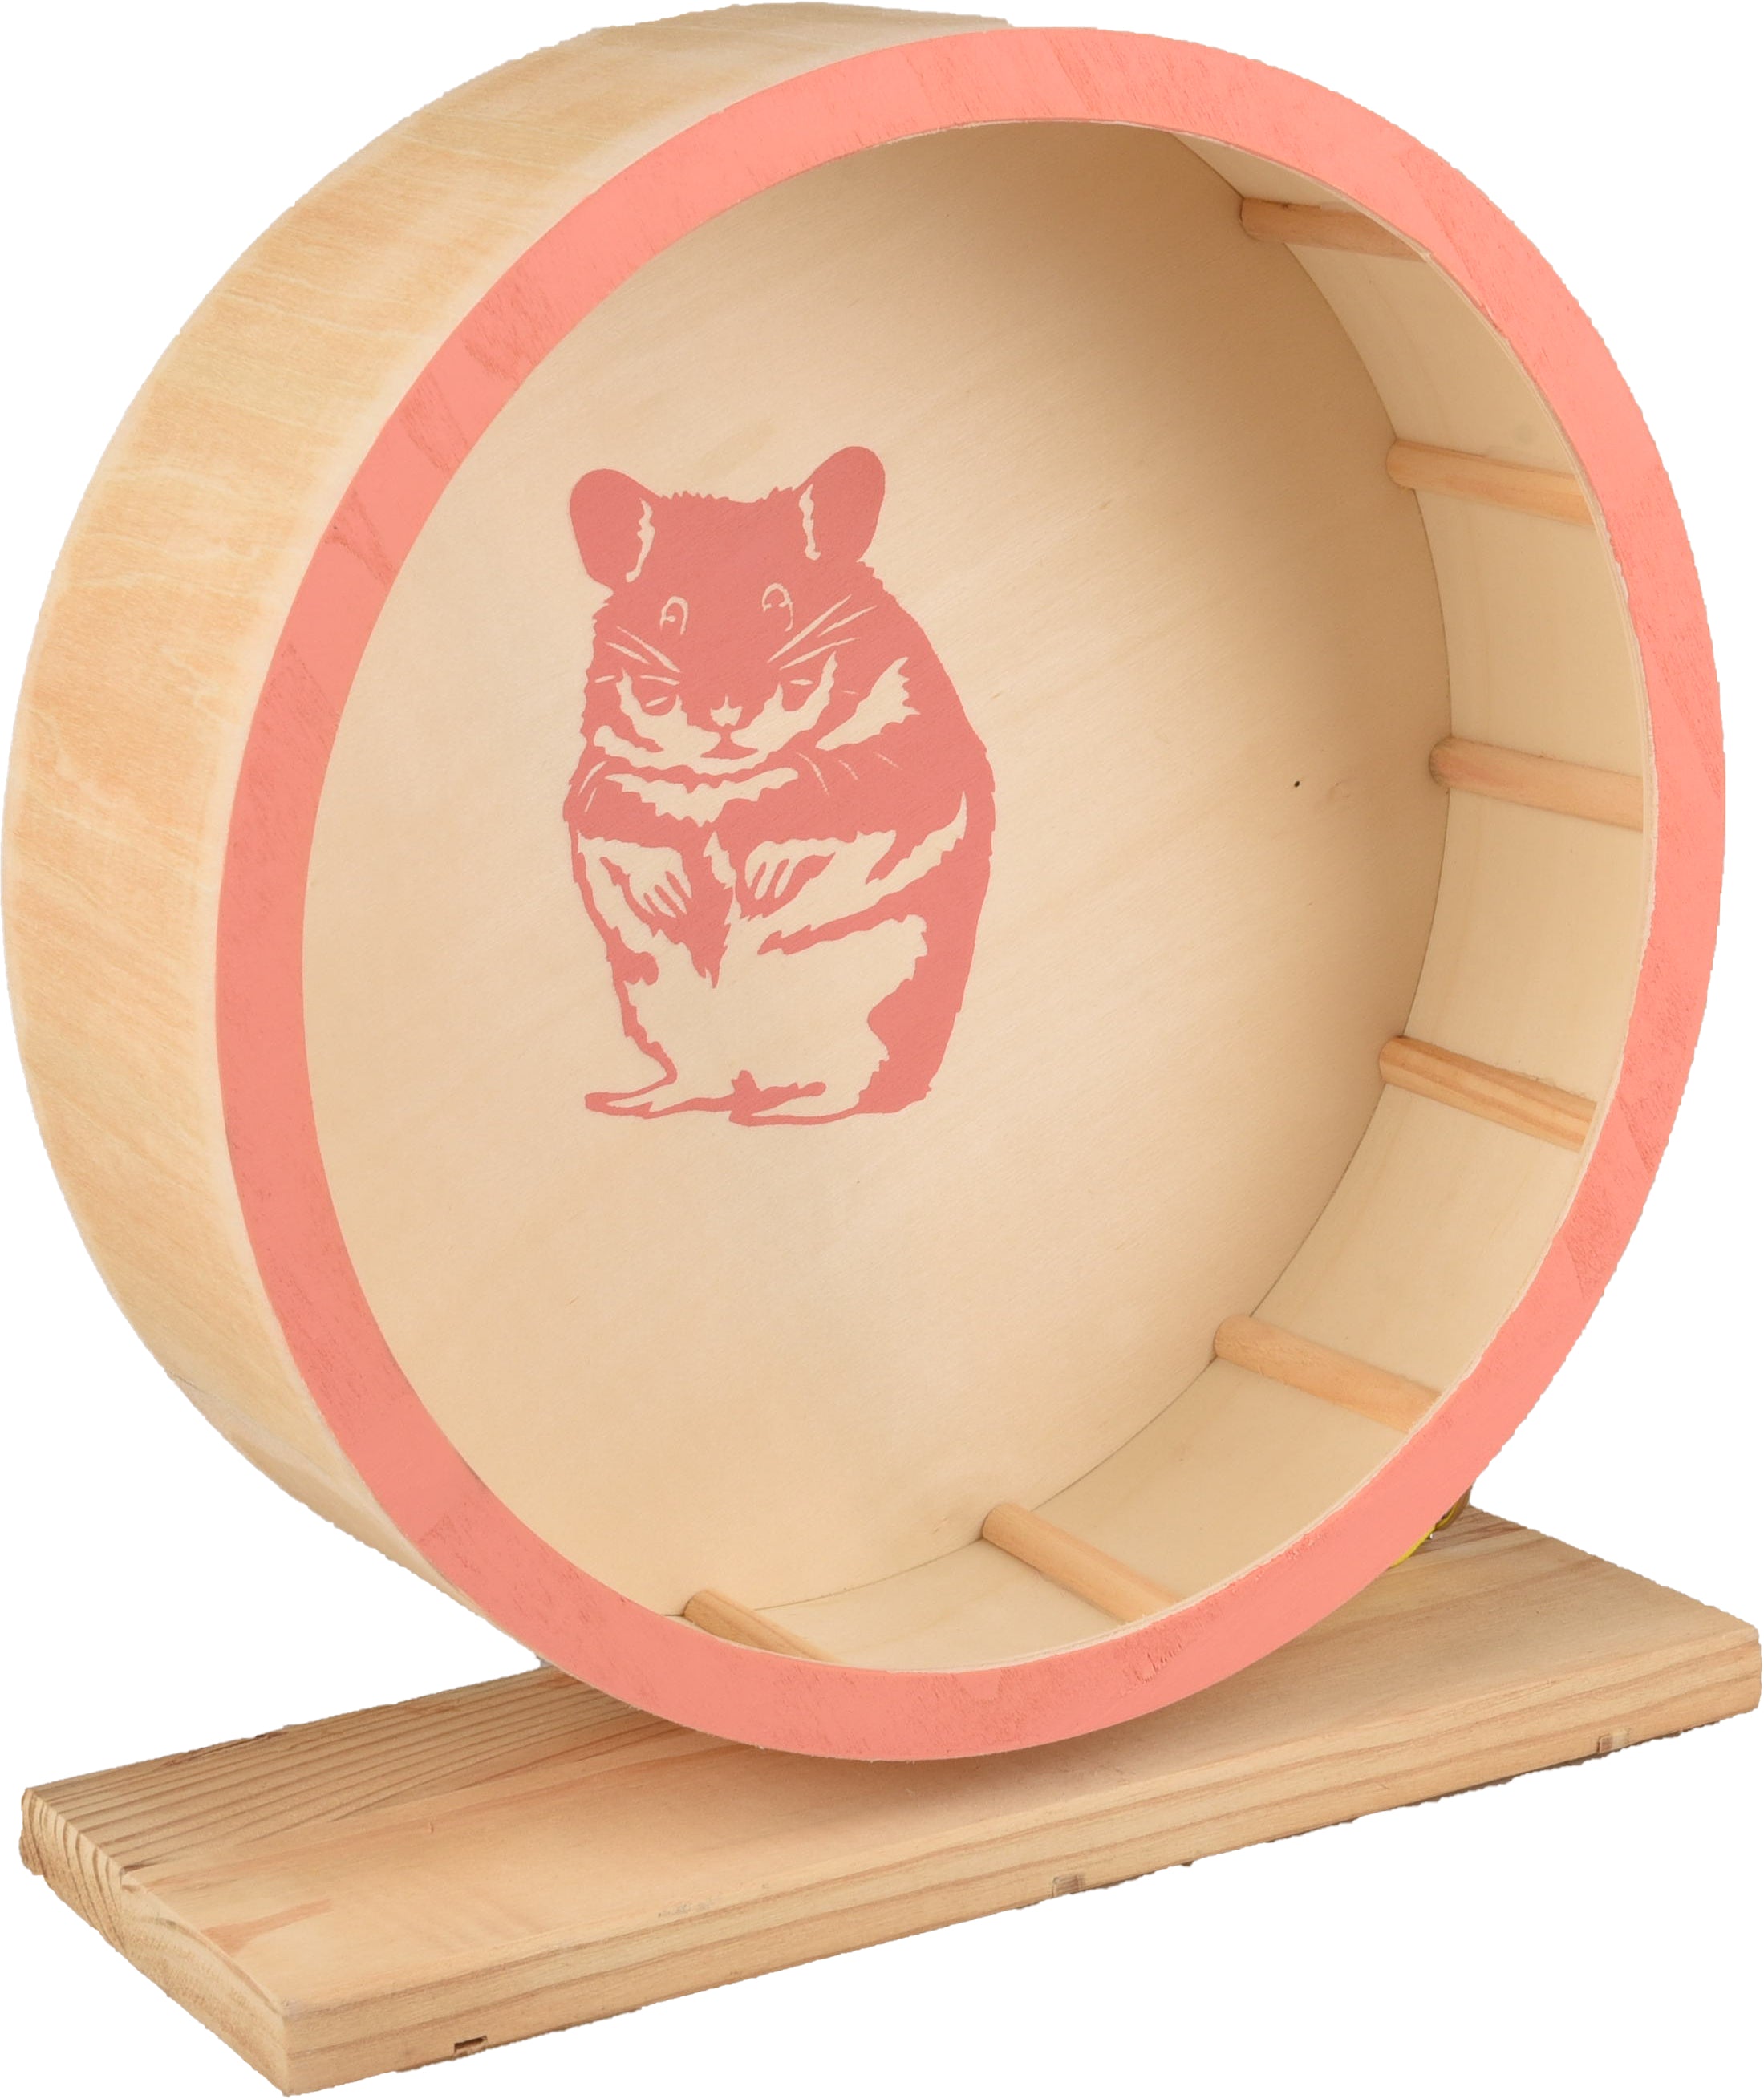 Hamster Looprad Danco hout zalm roze - Huisdierplezier